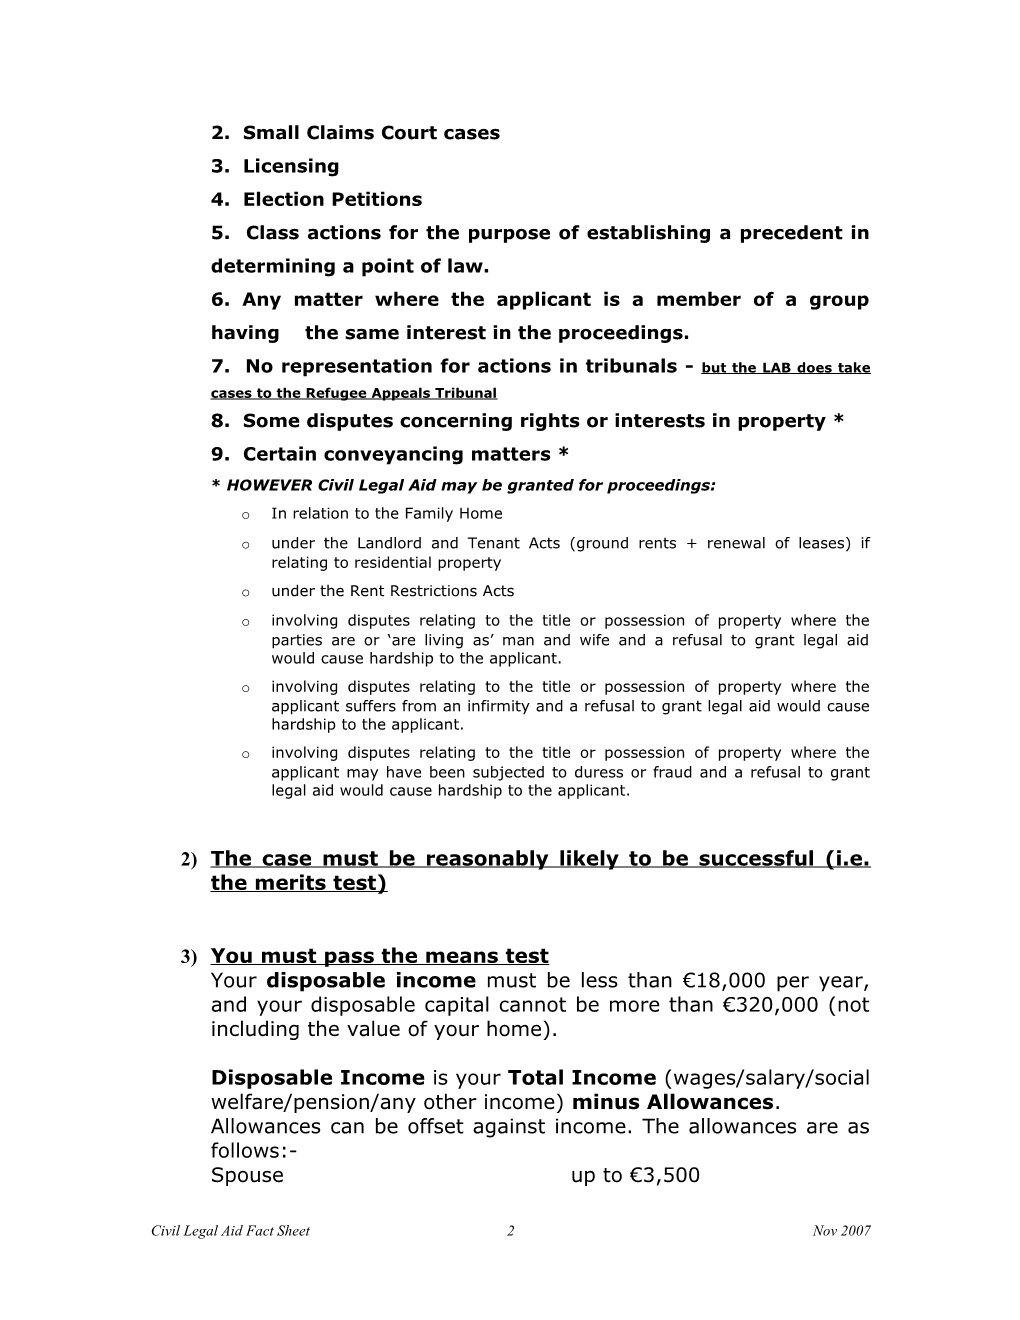 Civil Legal Aid - Fact Sheet